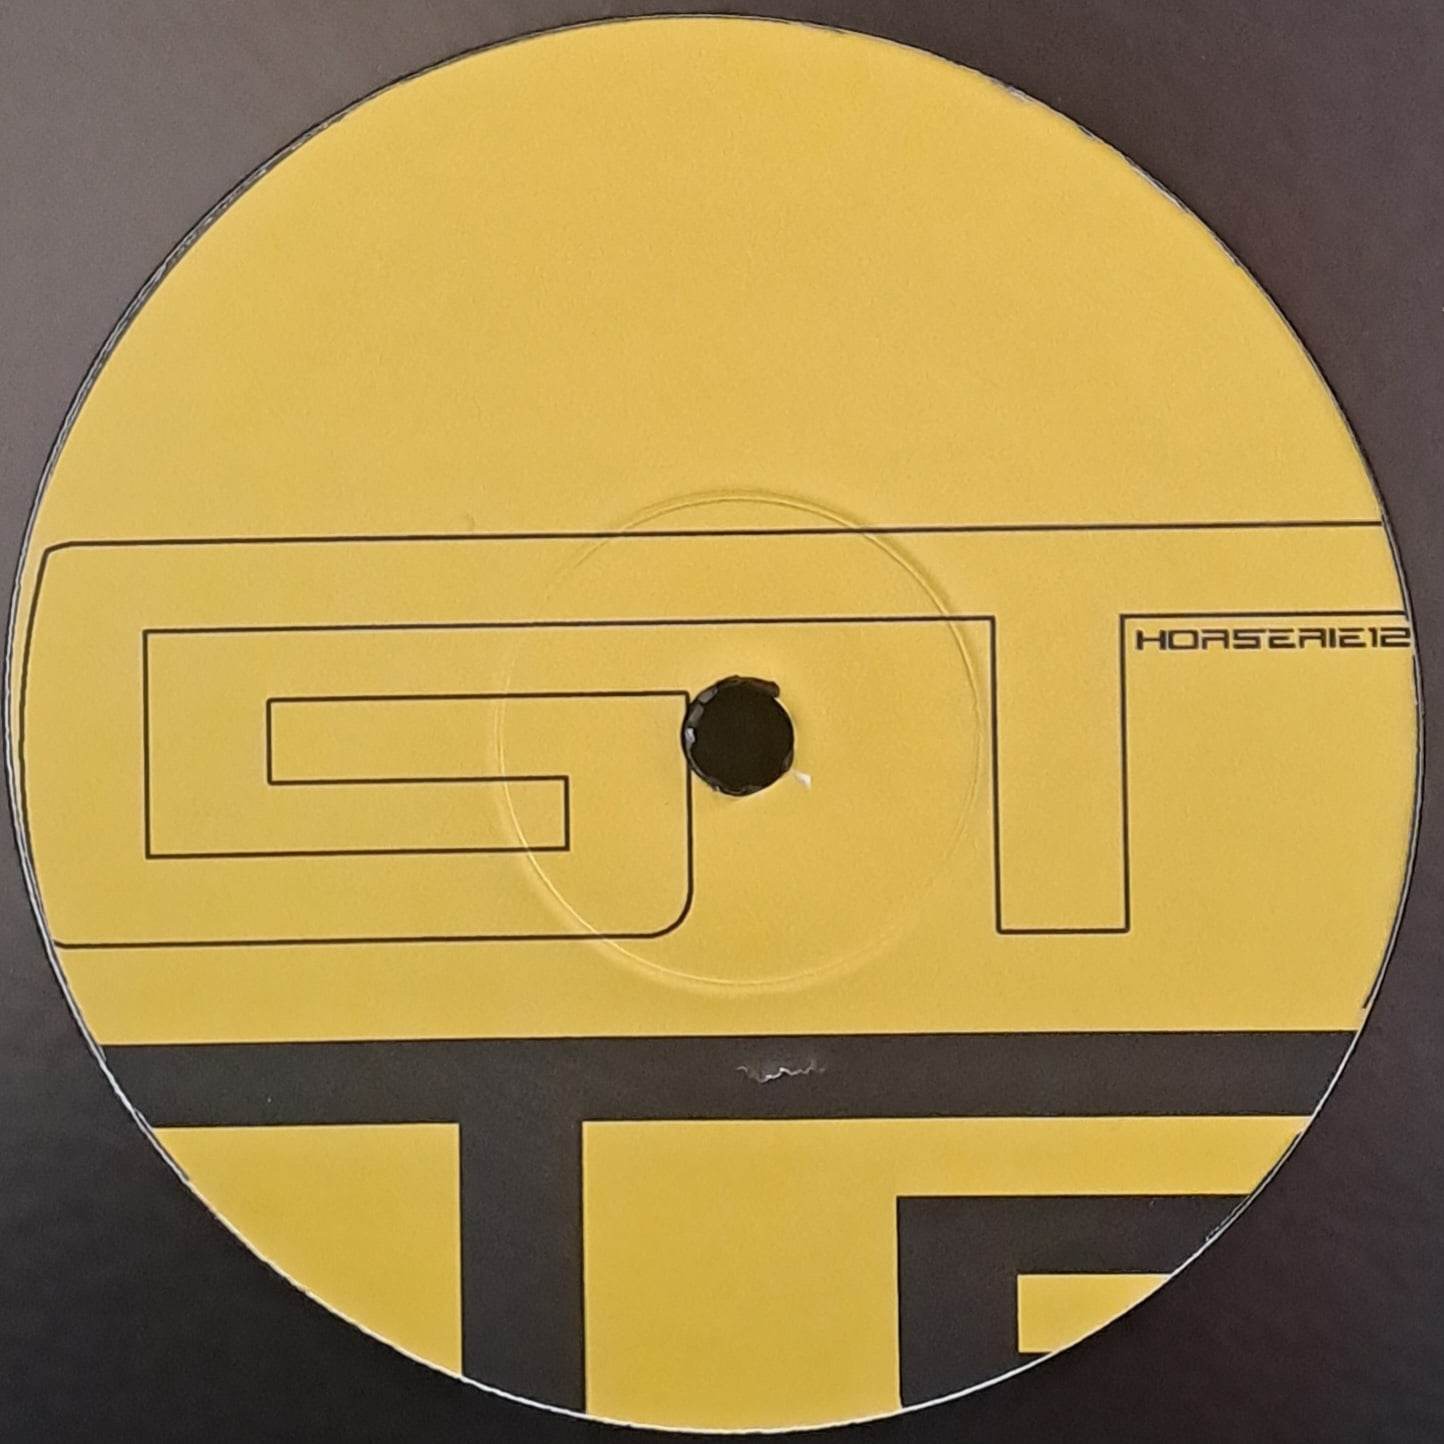 Gelstat Horserie 12 (dernières copies en stock) - vinyle techno